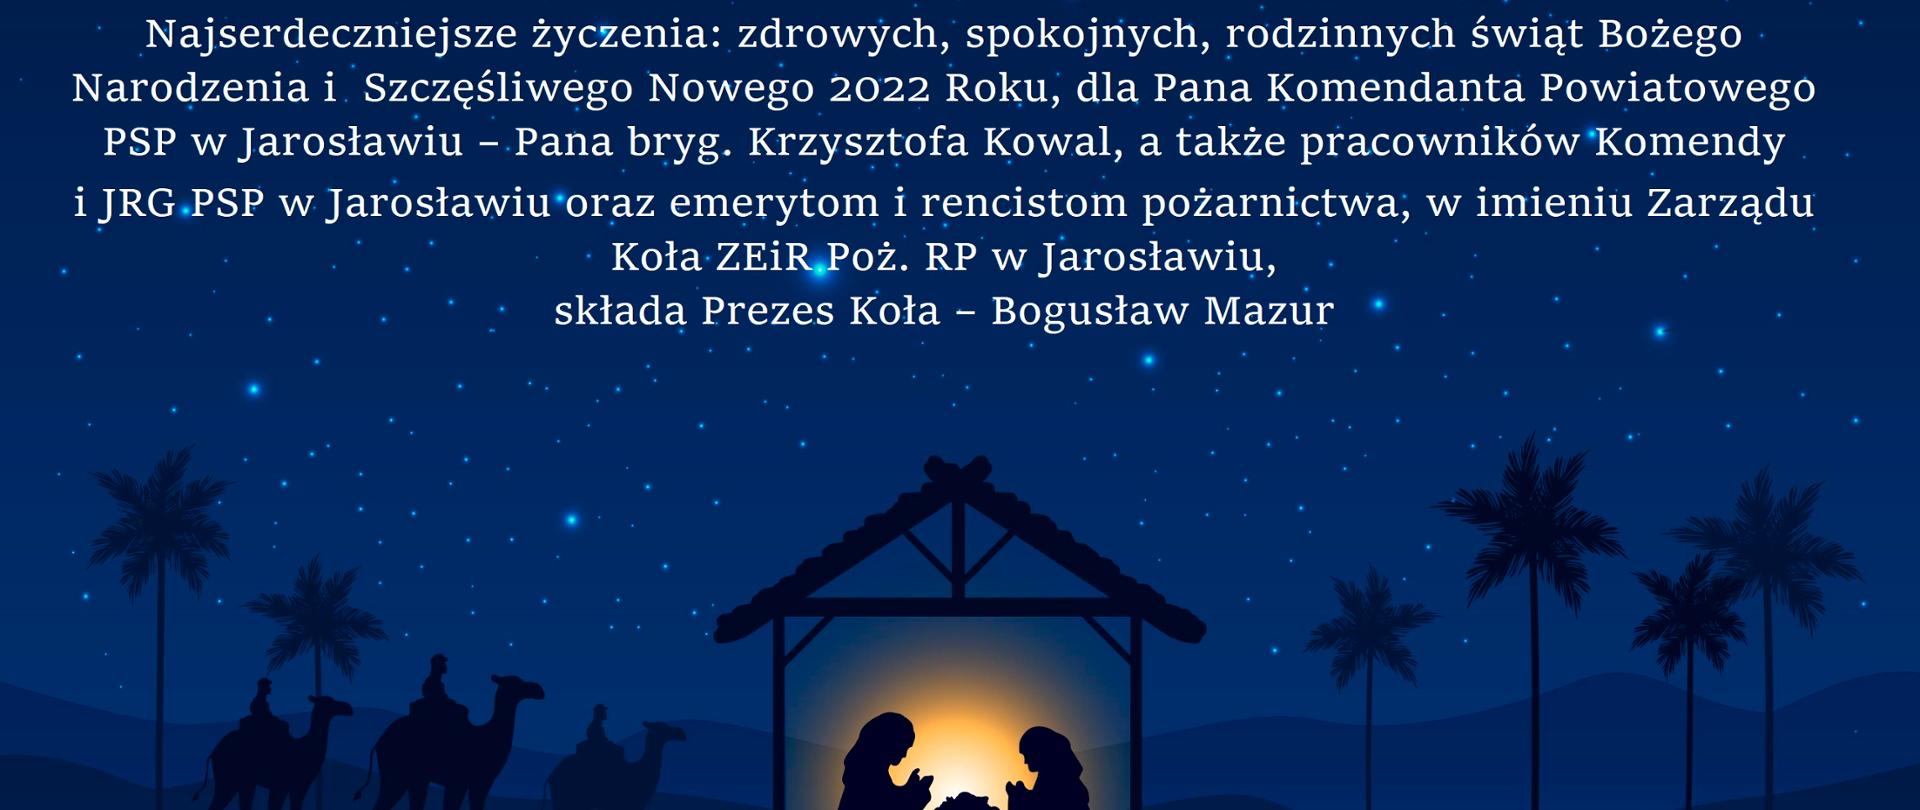 Na grafice widać grafikę szopki bożonarodzeniowej, a u góry życzenia o treści: "Najserdeczniejsze życzenia: zdrowych, spokojnych, rodzinnych świąt Bożego Narodzenia i Szczęśliwego Nowego 2022 Roku, dla Pana Komendanta Powiatowego PSP w Jarosławiu - Pana bryg. Krzysztofa Kowal, a także pracowników Komendy i JRG PSP w Jarosławiu oraz emerytom i rencistom pożarnictwa, w imieniu Zarządu Koła ZEiRP RP w Jarosławiu, składa Prezes Koła - Bogusław Mazur".